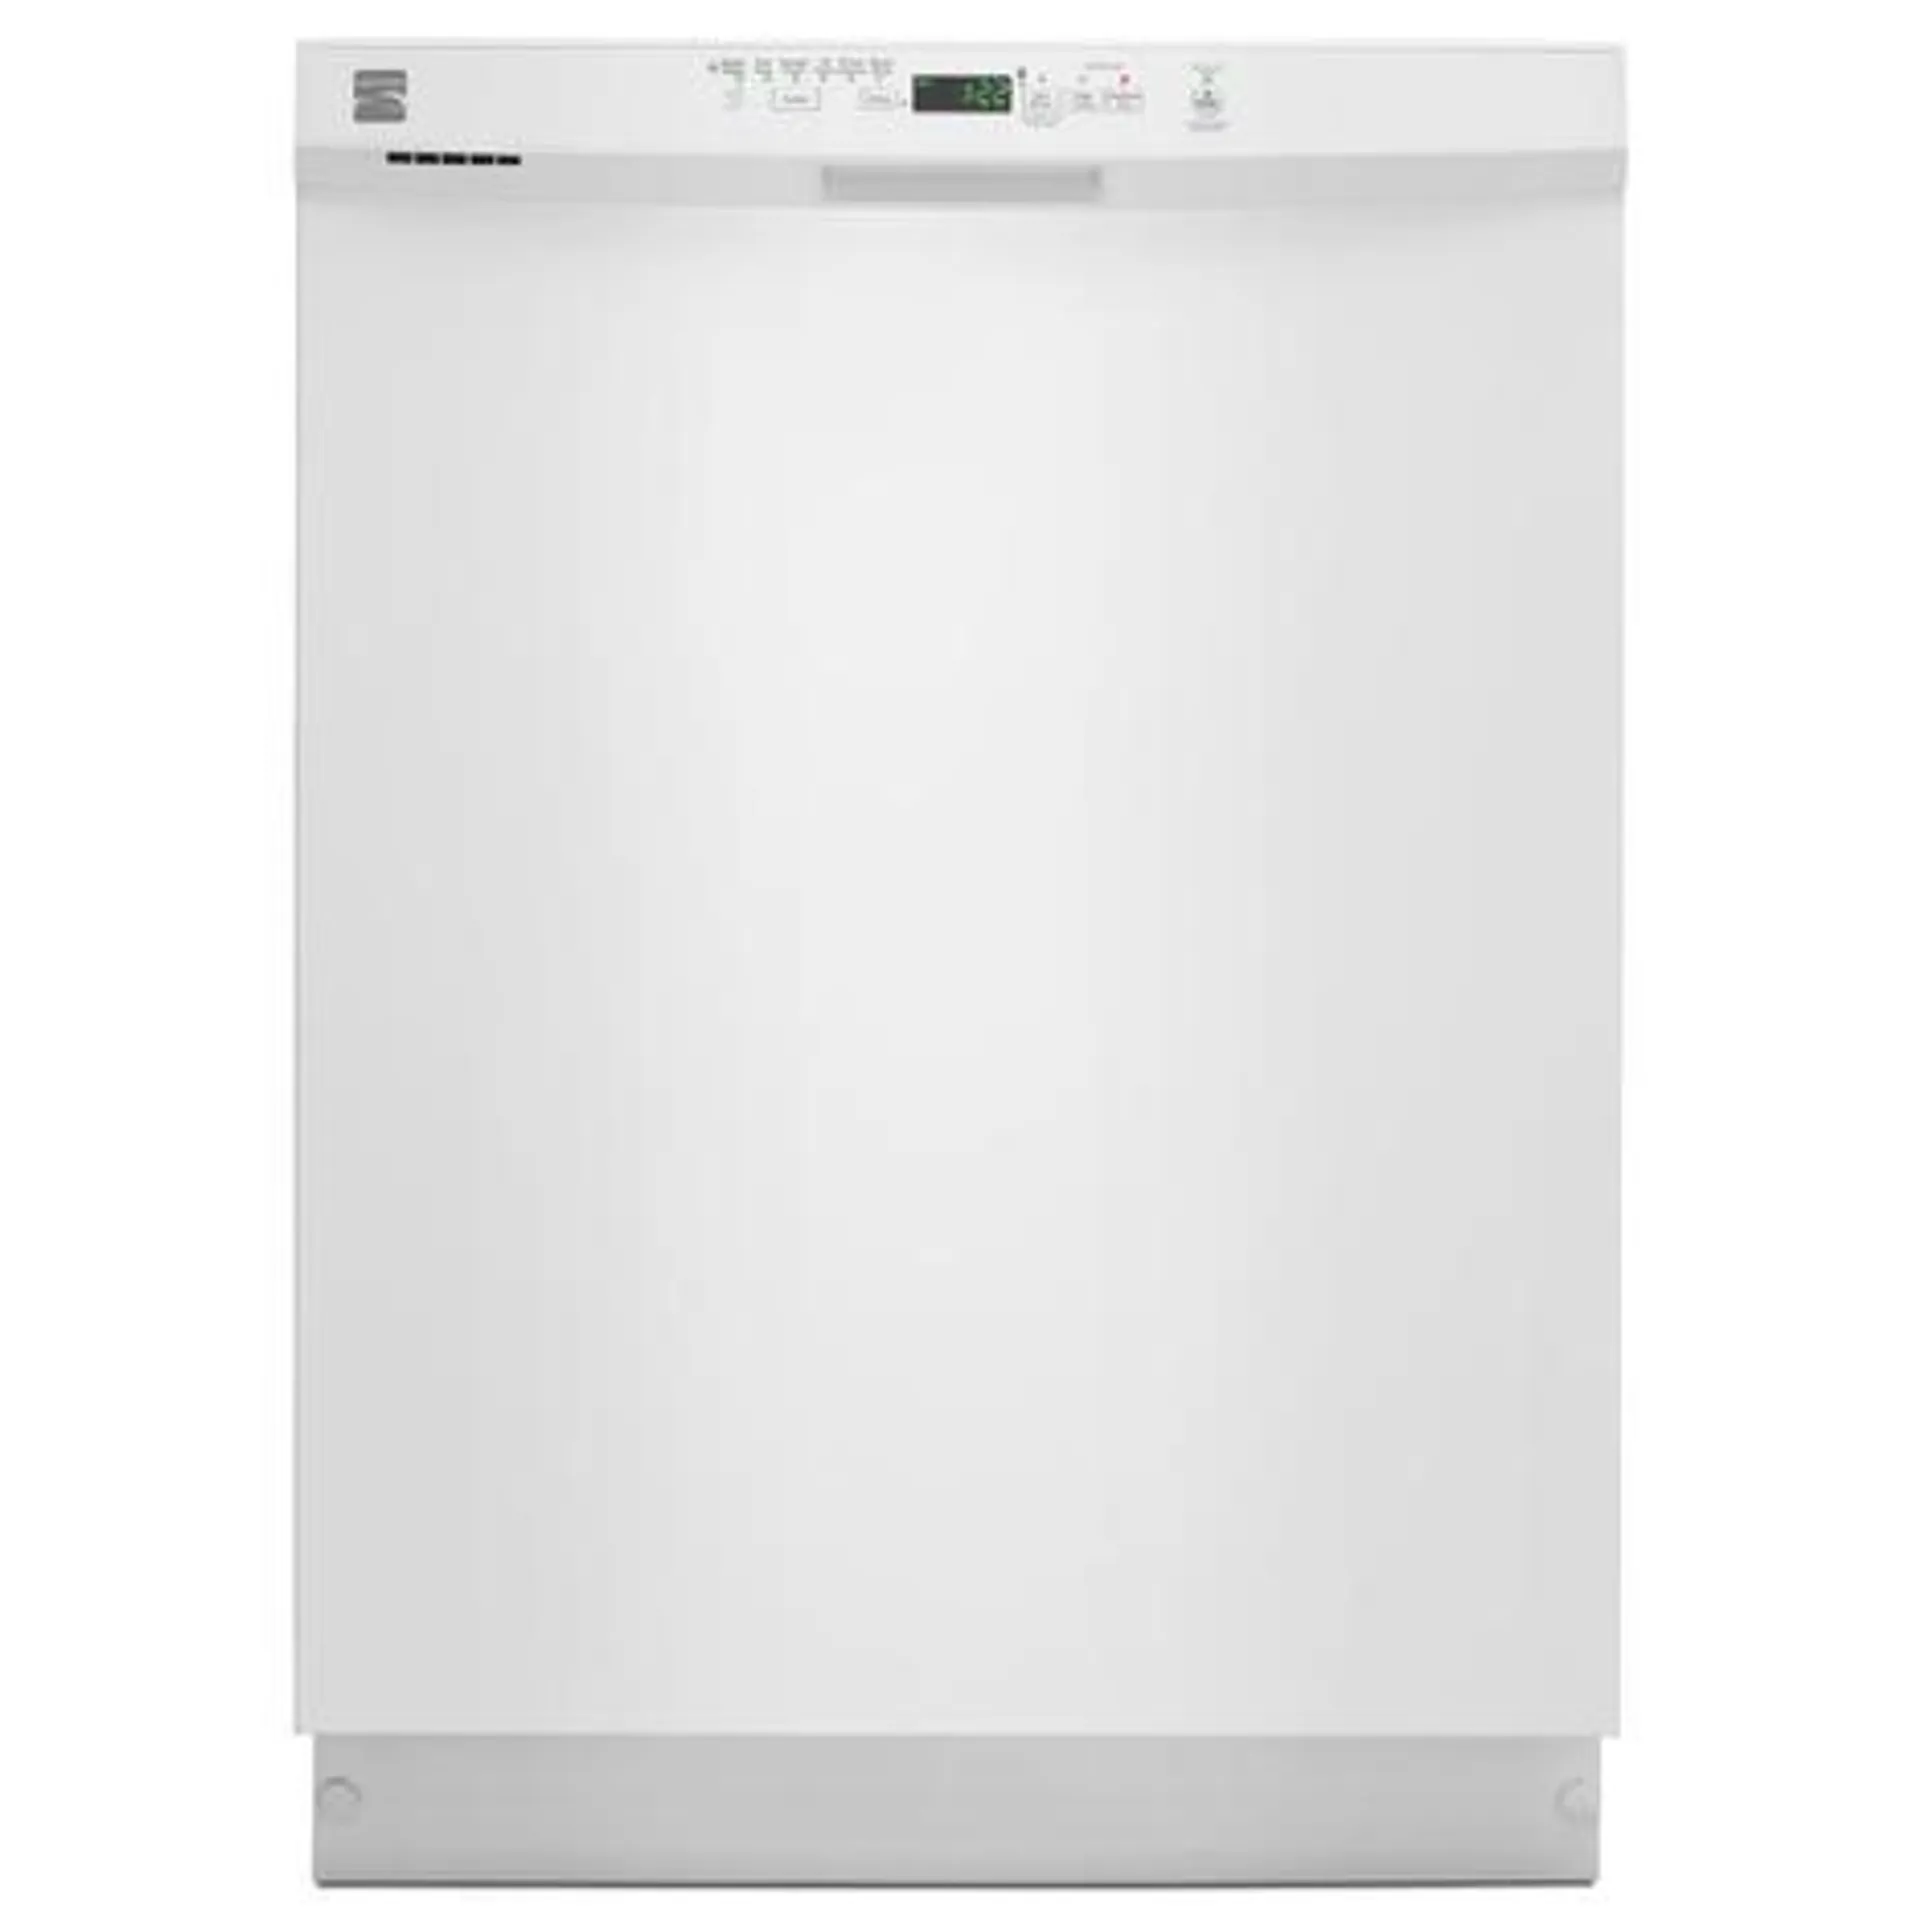 Kenmore 13092 24" Built-In Dishwasher w/ PowerWave Spray Arm - White